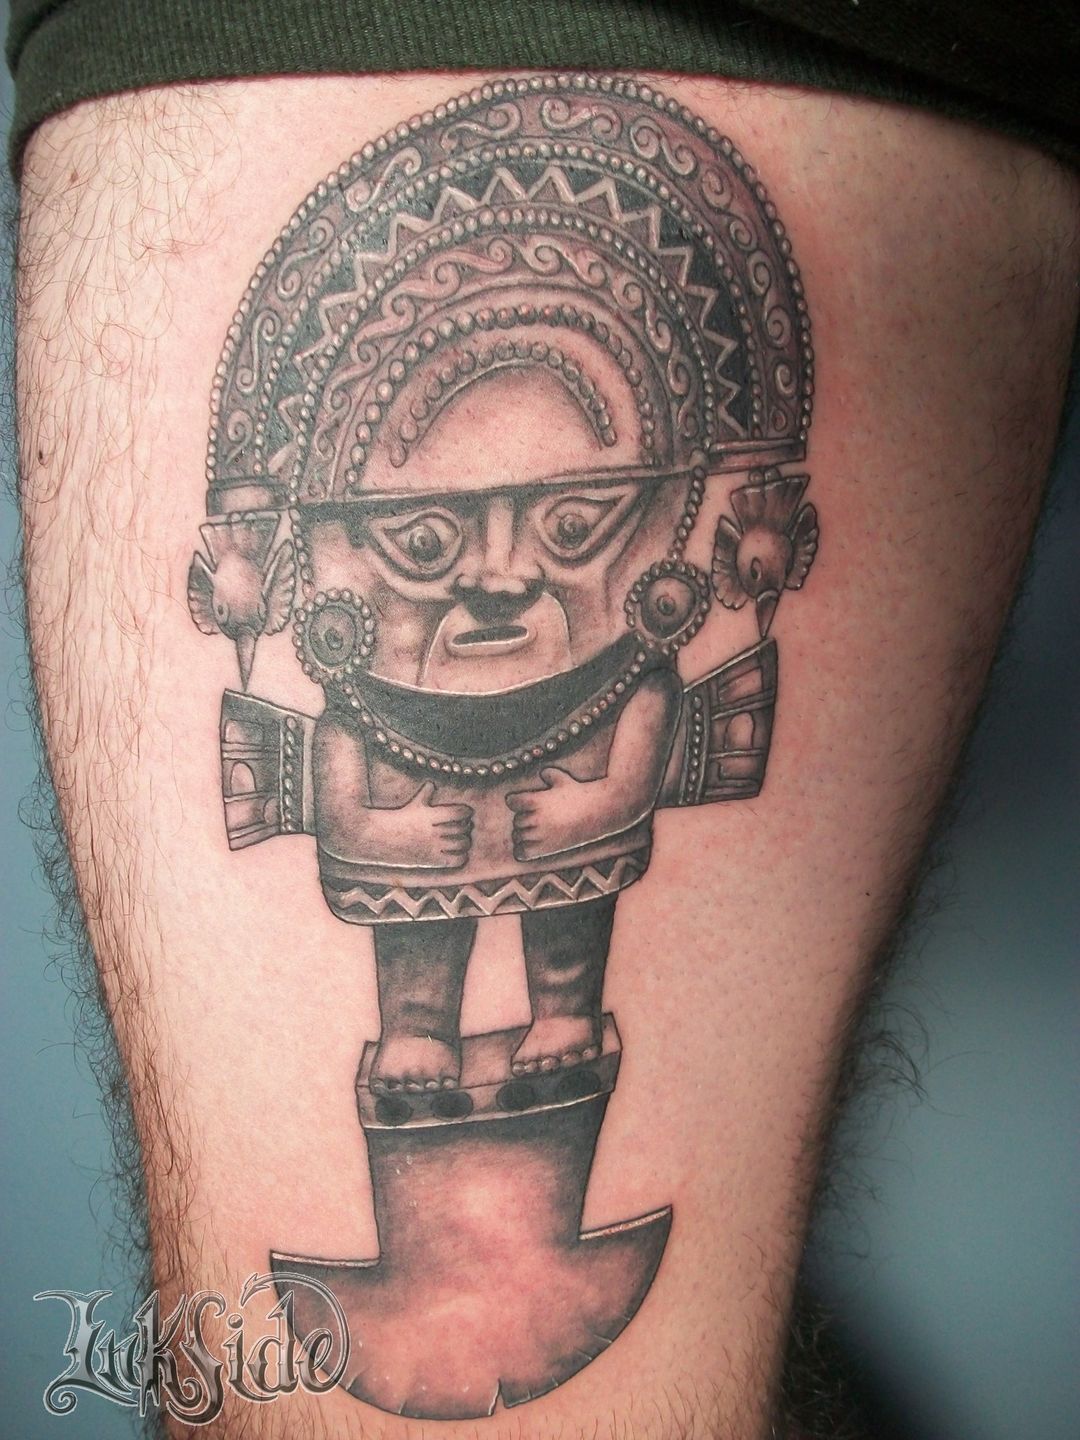 Body Ink Tattoo - Foto de tatuaje de Inca en grises, lindos detalles y bien  definido, solo tatuajes de calidad Inca tattoo photo in gray, beautiful and  well defined details, only quality